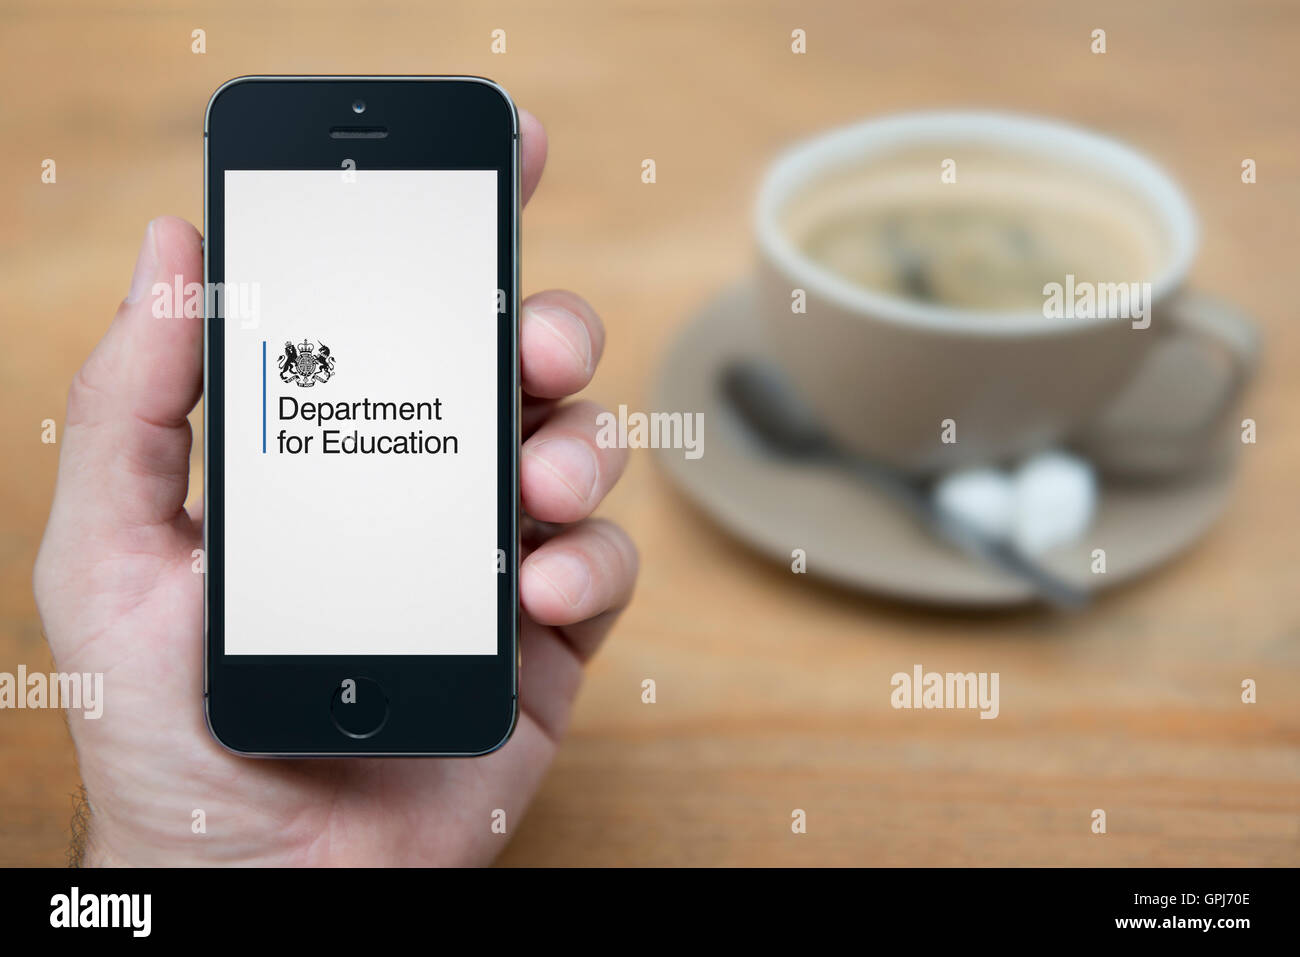 Un uomo guarda al suo iPhone che visualizza il ministero del governo del Regno Unito per l'istruzione logo, con caffè (solo uso editoriale). Foto Stock